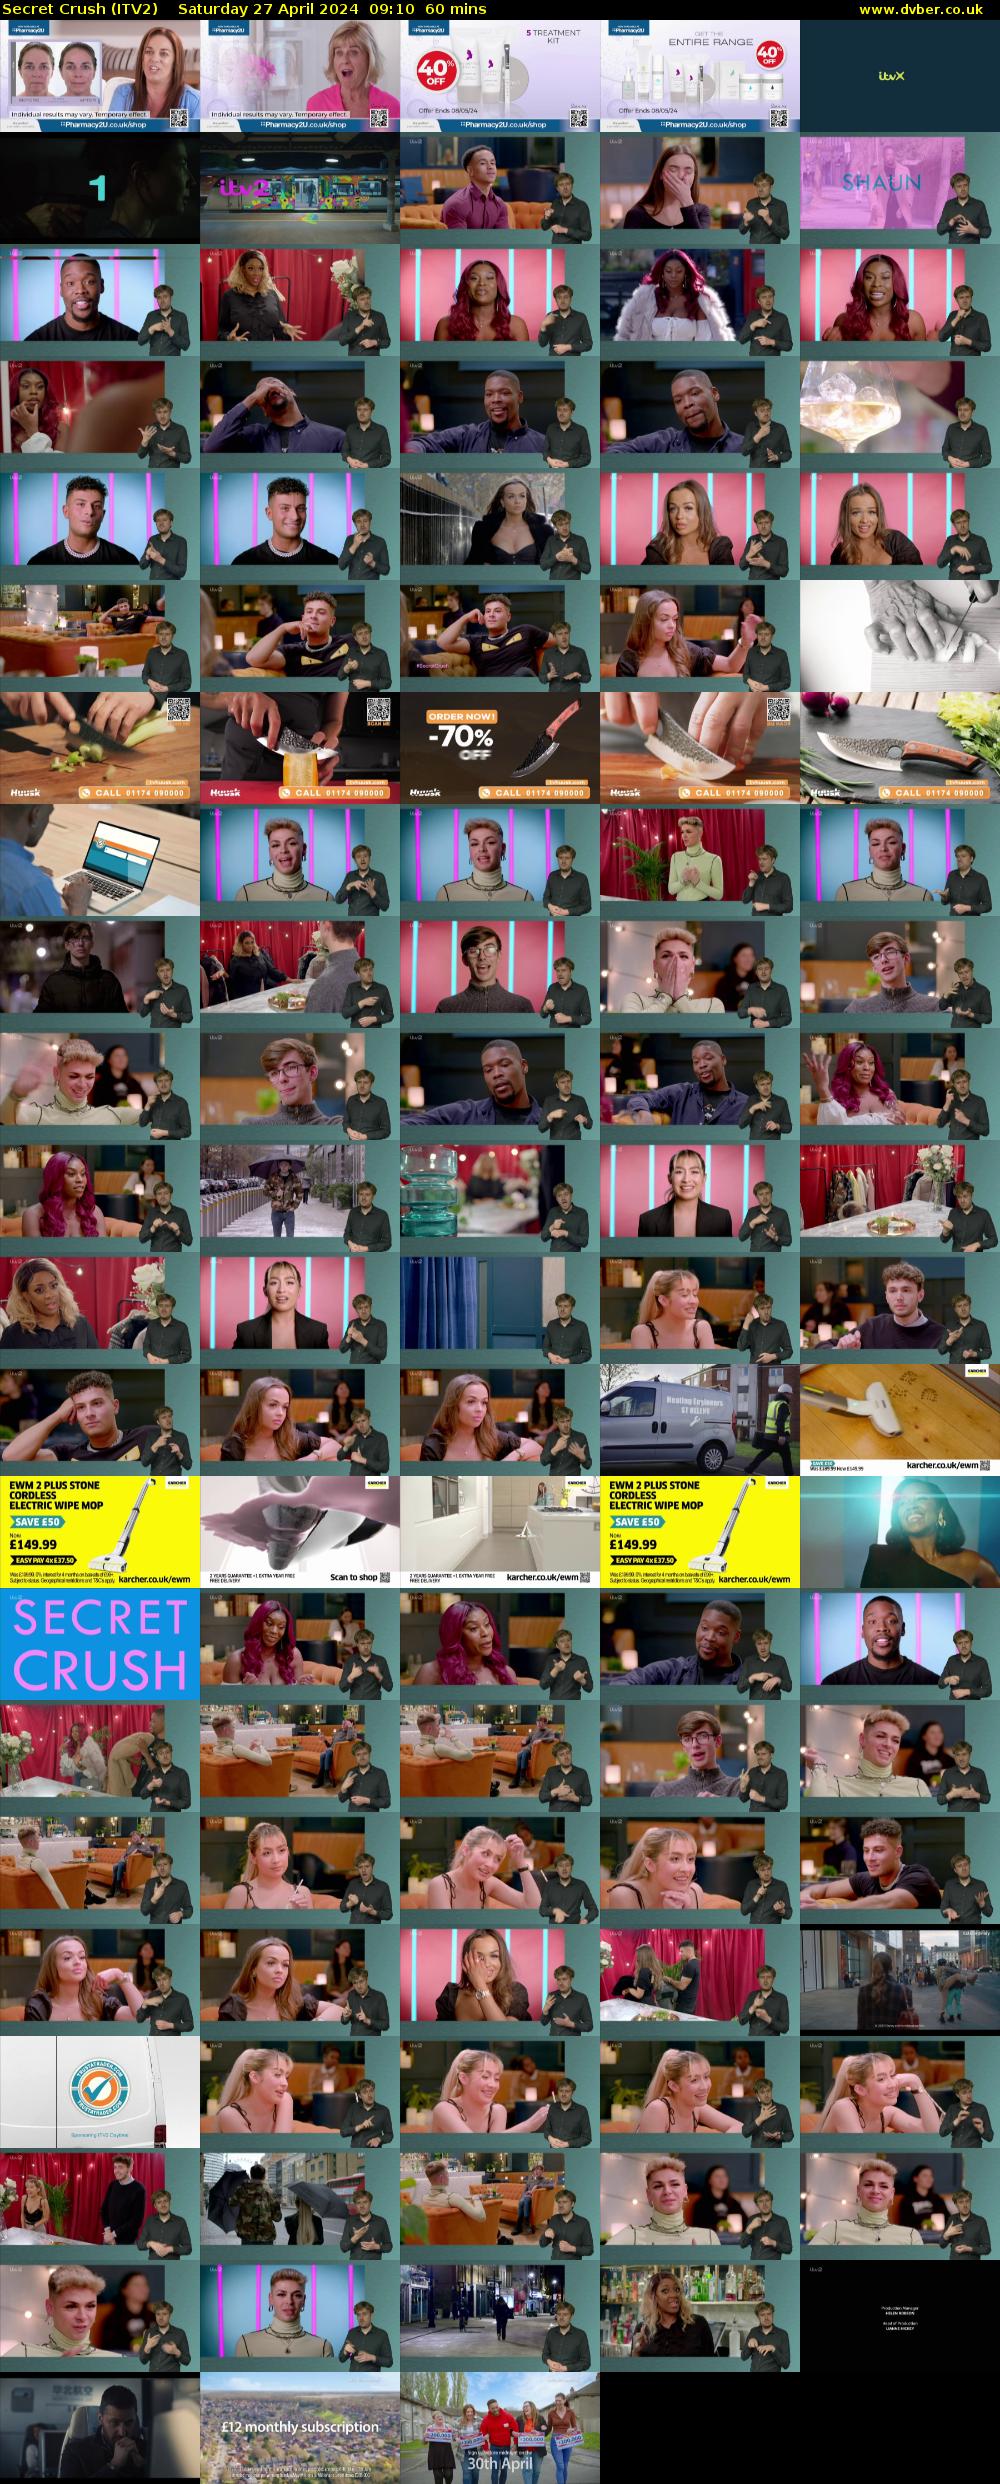 Secret Crush (ITV2) Saturday 27 April 2024 09:10 - 10:10